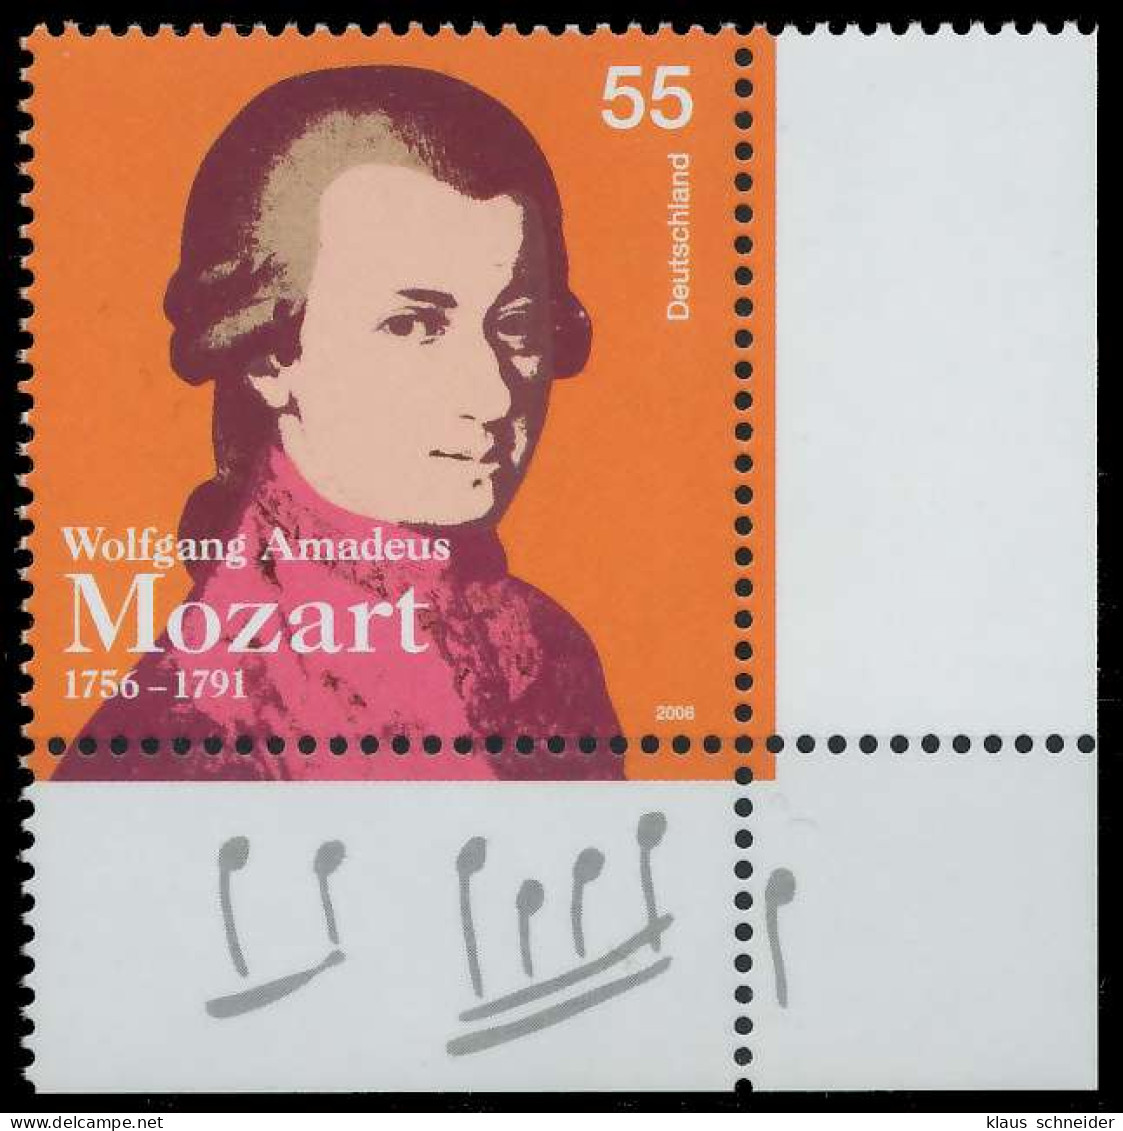 BRD BUND 2006 Nr 2512 Postfrisch ECKE-URE X33B816 - Unused Stamps